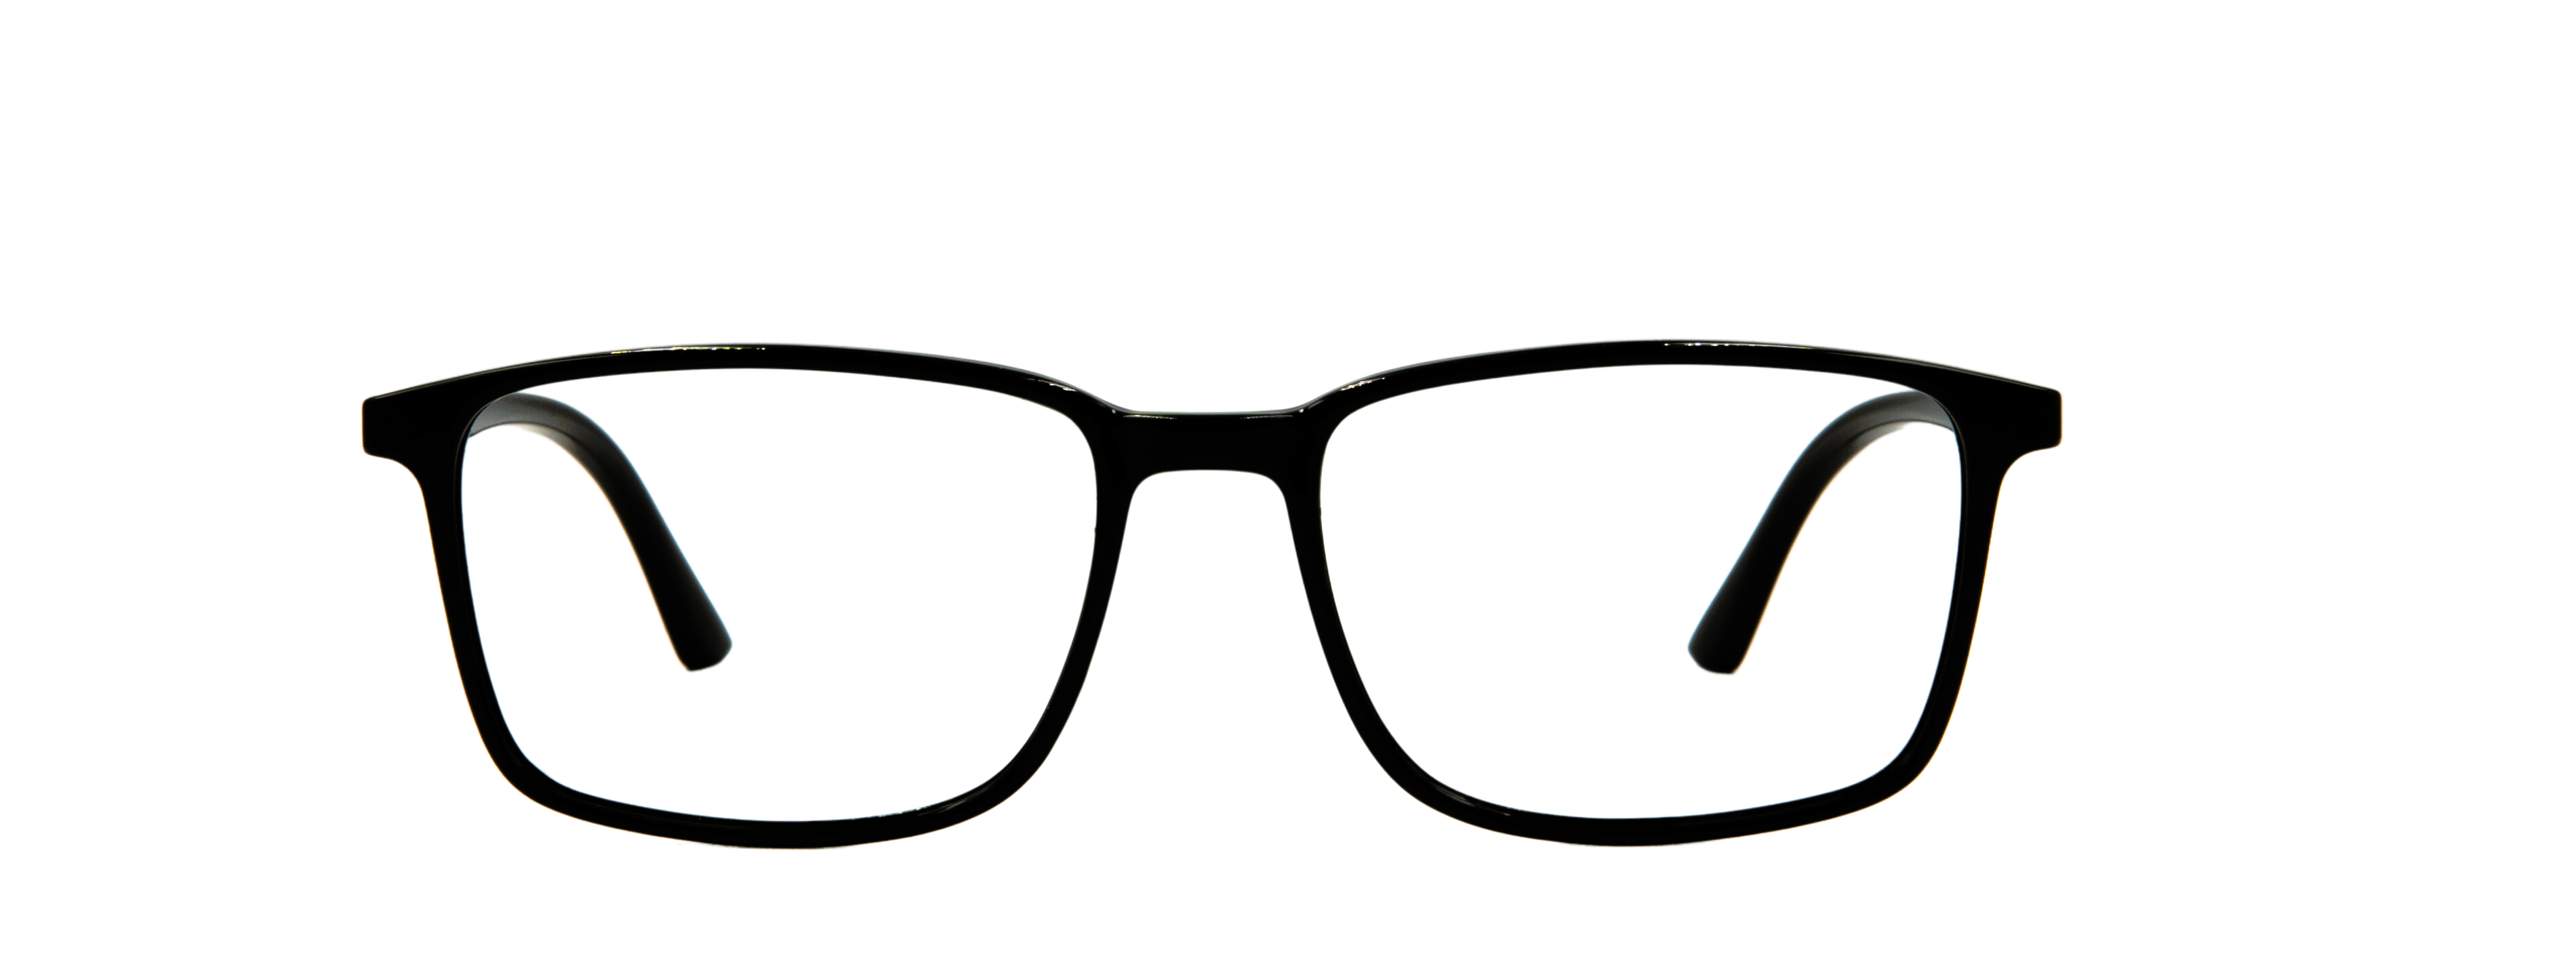 Anatolia Ventures Optik | Erkek Gözlüğü Üretim, Kadın Gözlüğü Üretim, Çocuk Gözlüğü Üretim, Kolej Gözlüğü Üretim, Okuma Gözlüğü Üretim, Unisex Gözlüğü Üretim, Güneş Gözlüğü Üretim , Köprül Gözlüğü Üretim,  Erkek Gözlüğü, Kadın Gözlüğü, Çocuk Gözlüğü, Kolej Gözlüğü, Okuma Gözlüğü, Unisex Gözlüğü, Güneş Gözlüğü, Frenk Gözlüğü, Frenk Metal Gözlüğü, Frenk Okuma Gözlüğü, Frenk Güneş Gözlüğü, Köprül Gözlüğü